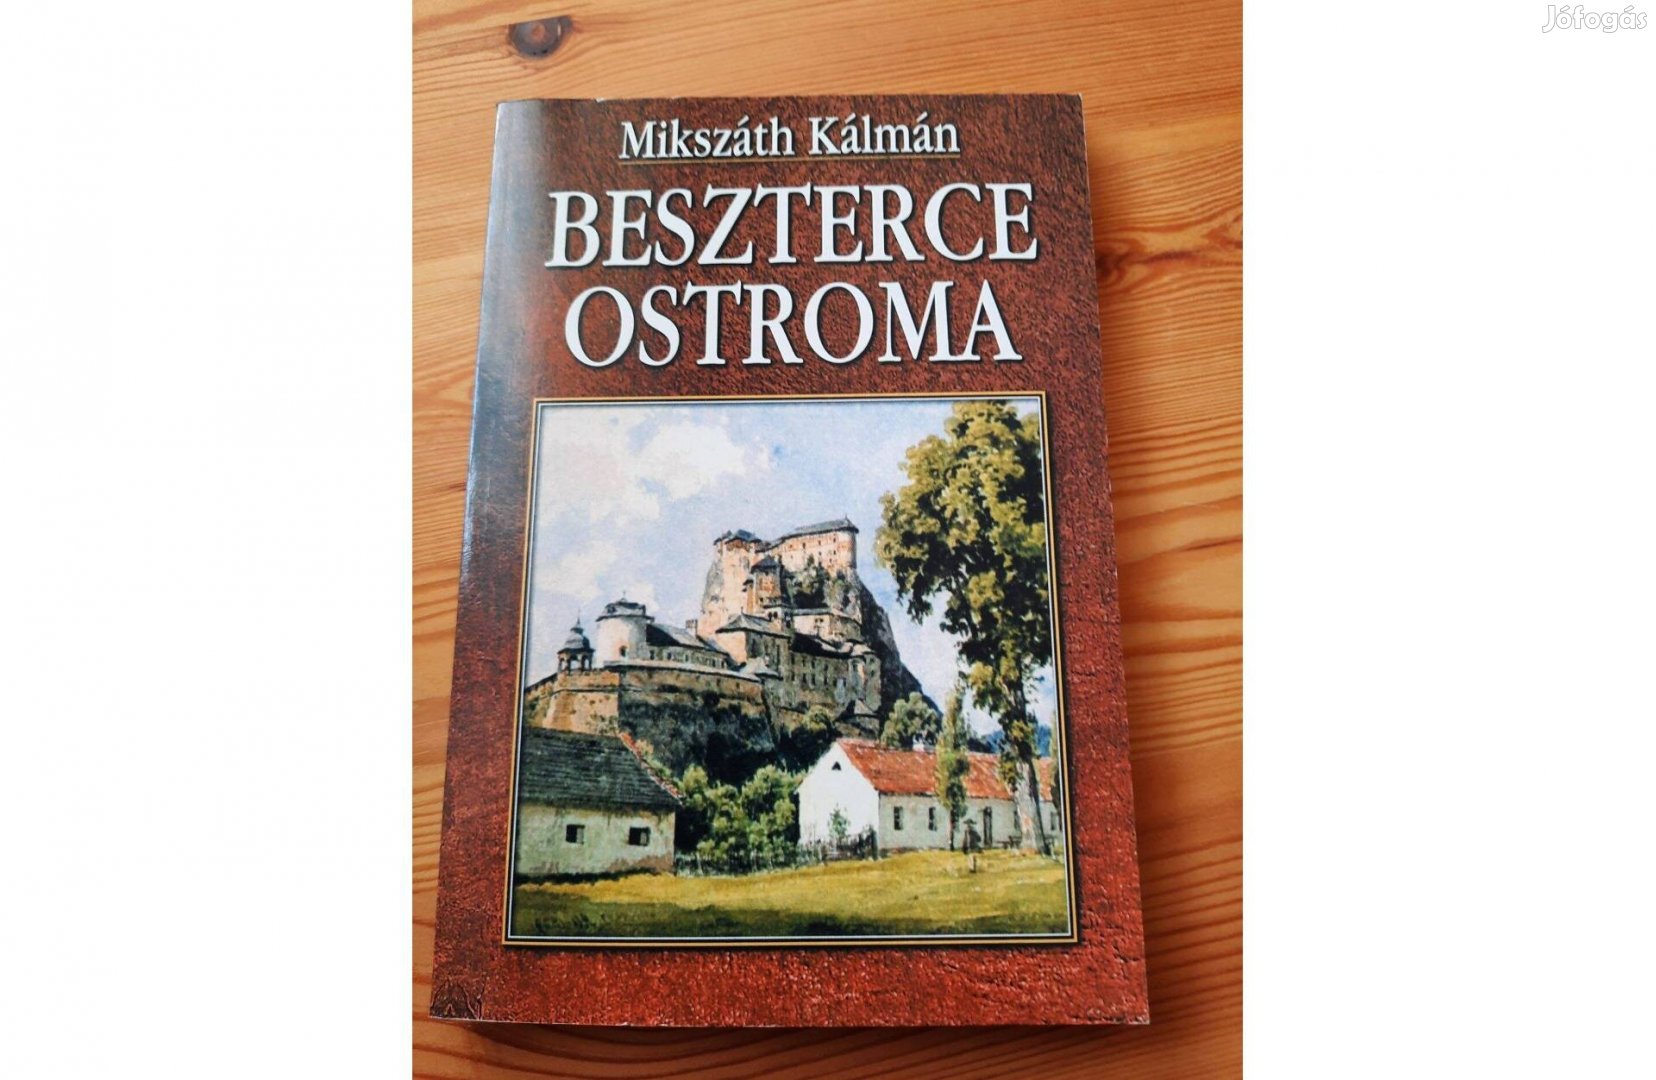 Mikszáth Kálmán Beszterce ostroma c. könyv eladó